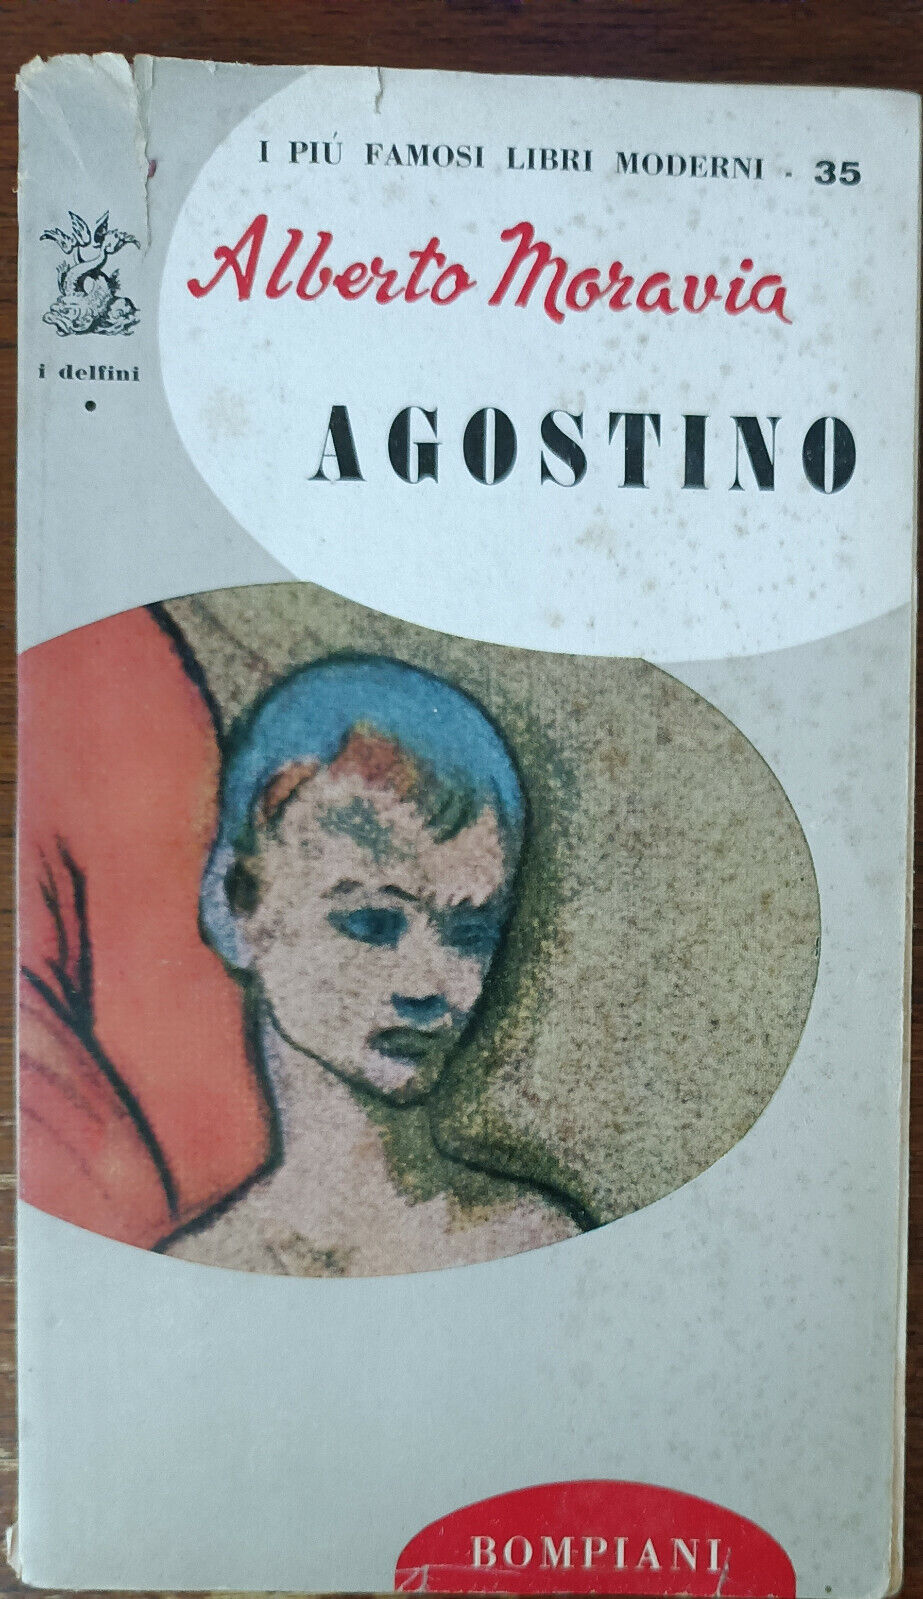 Agostino - Alberto Moravia - Bompiani, 1956 - A